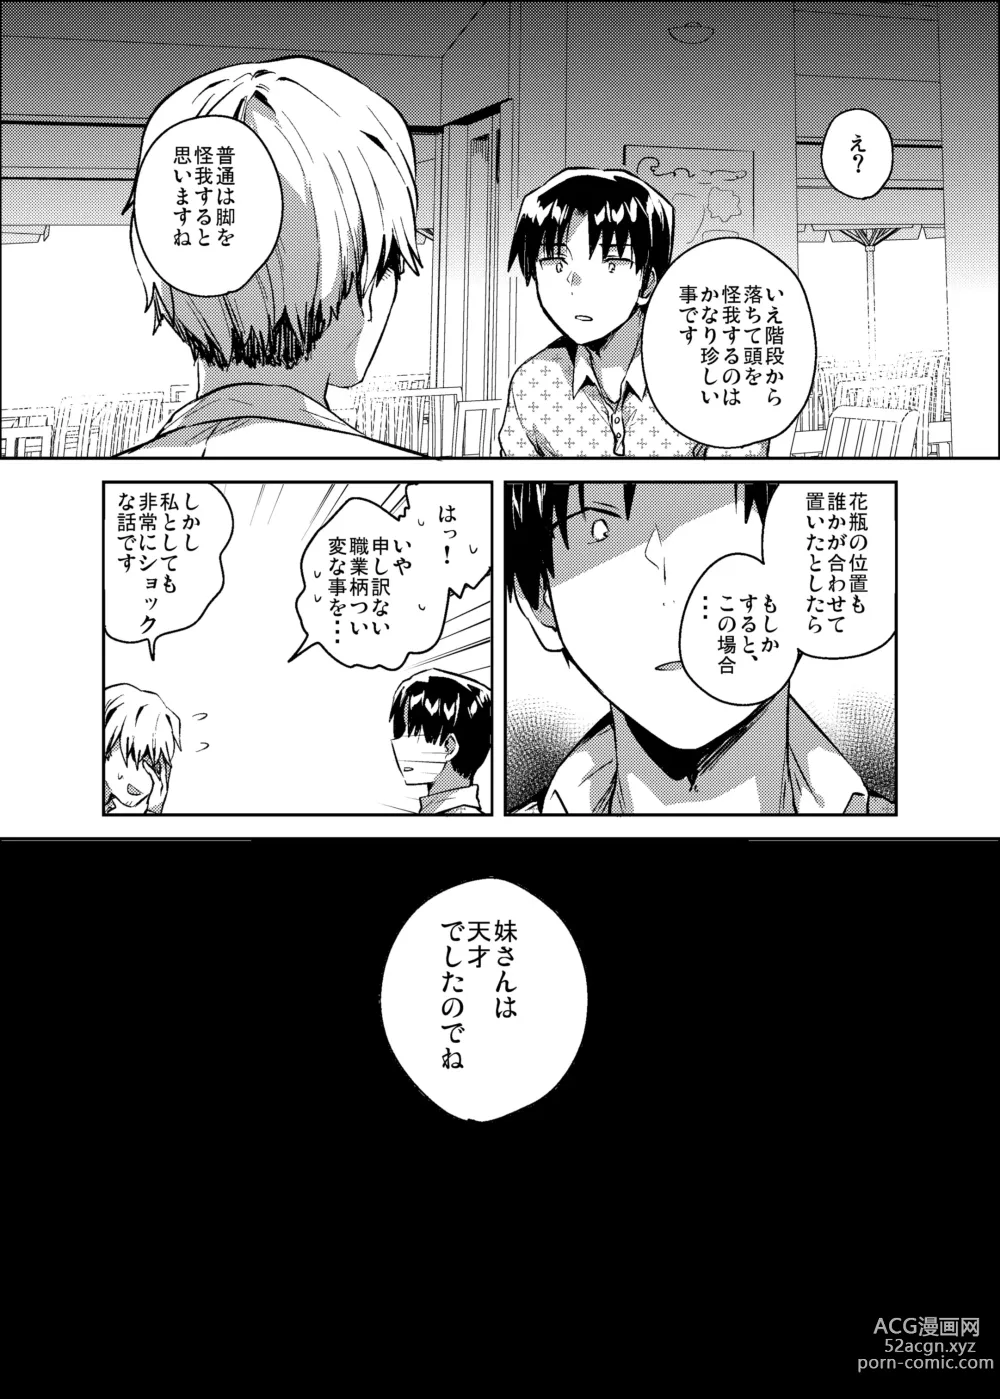 Page 3 of doujinshi Imouto wa Kanji ga Yomenai